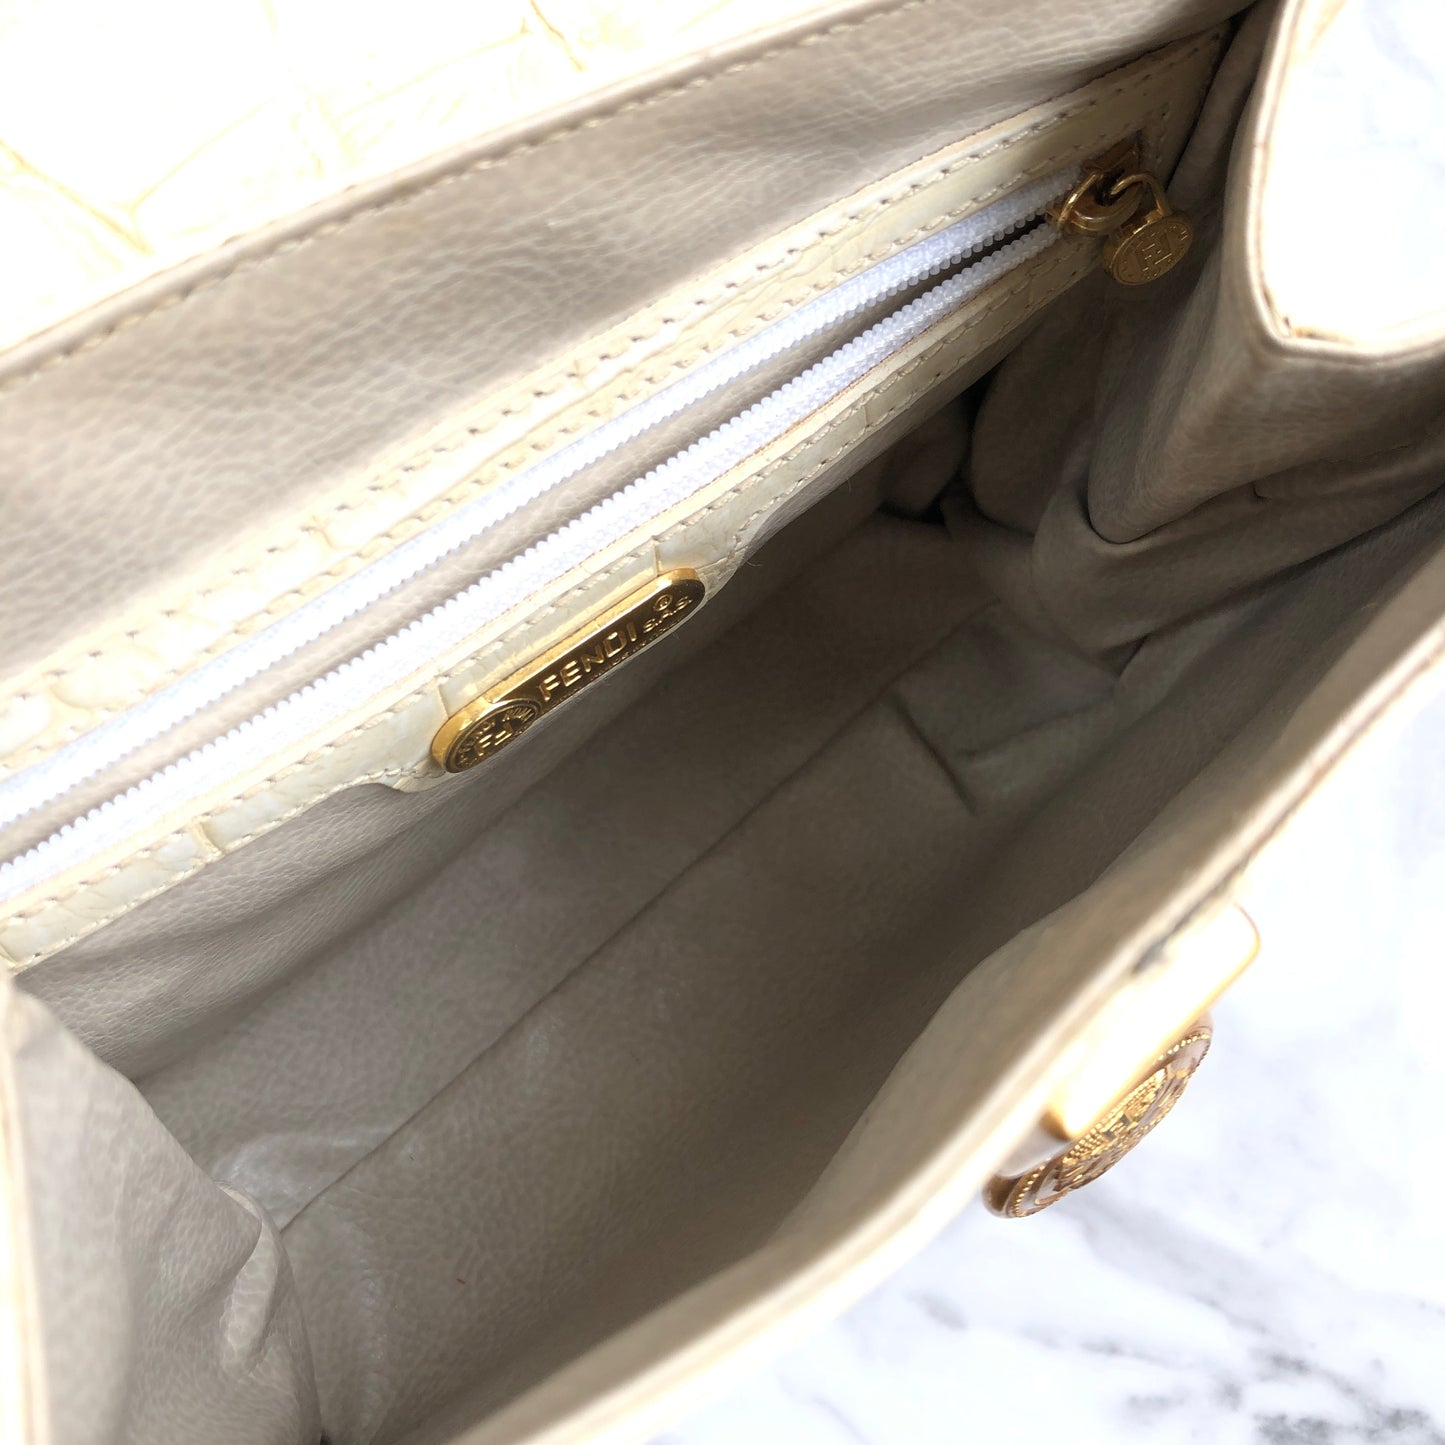 FENDI Greece motif Crocodile embossed leather 2Way Handbag Shoulder bag White Vintage Old ervanh